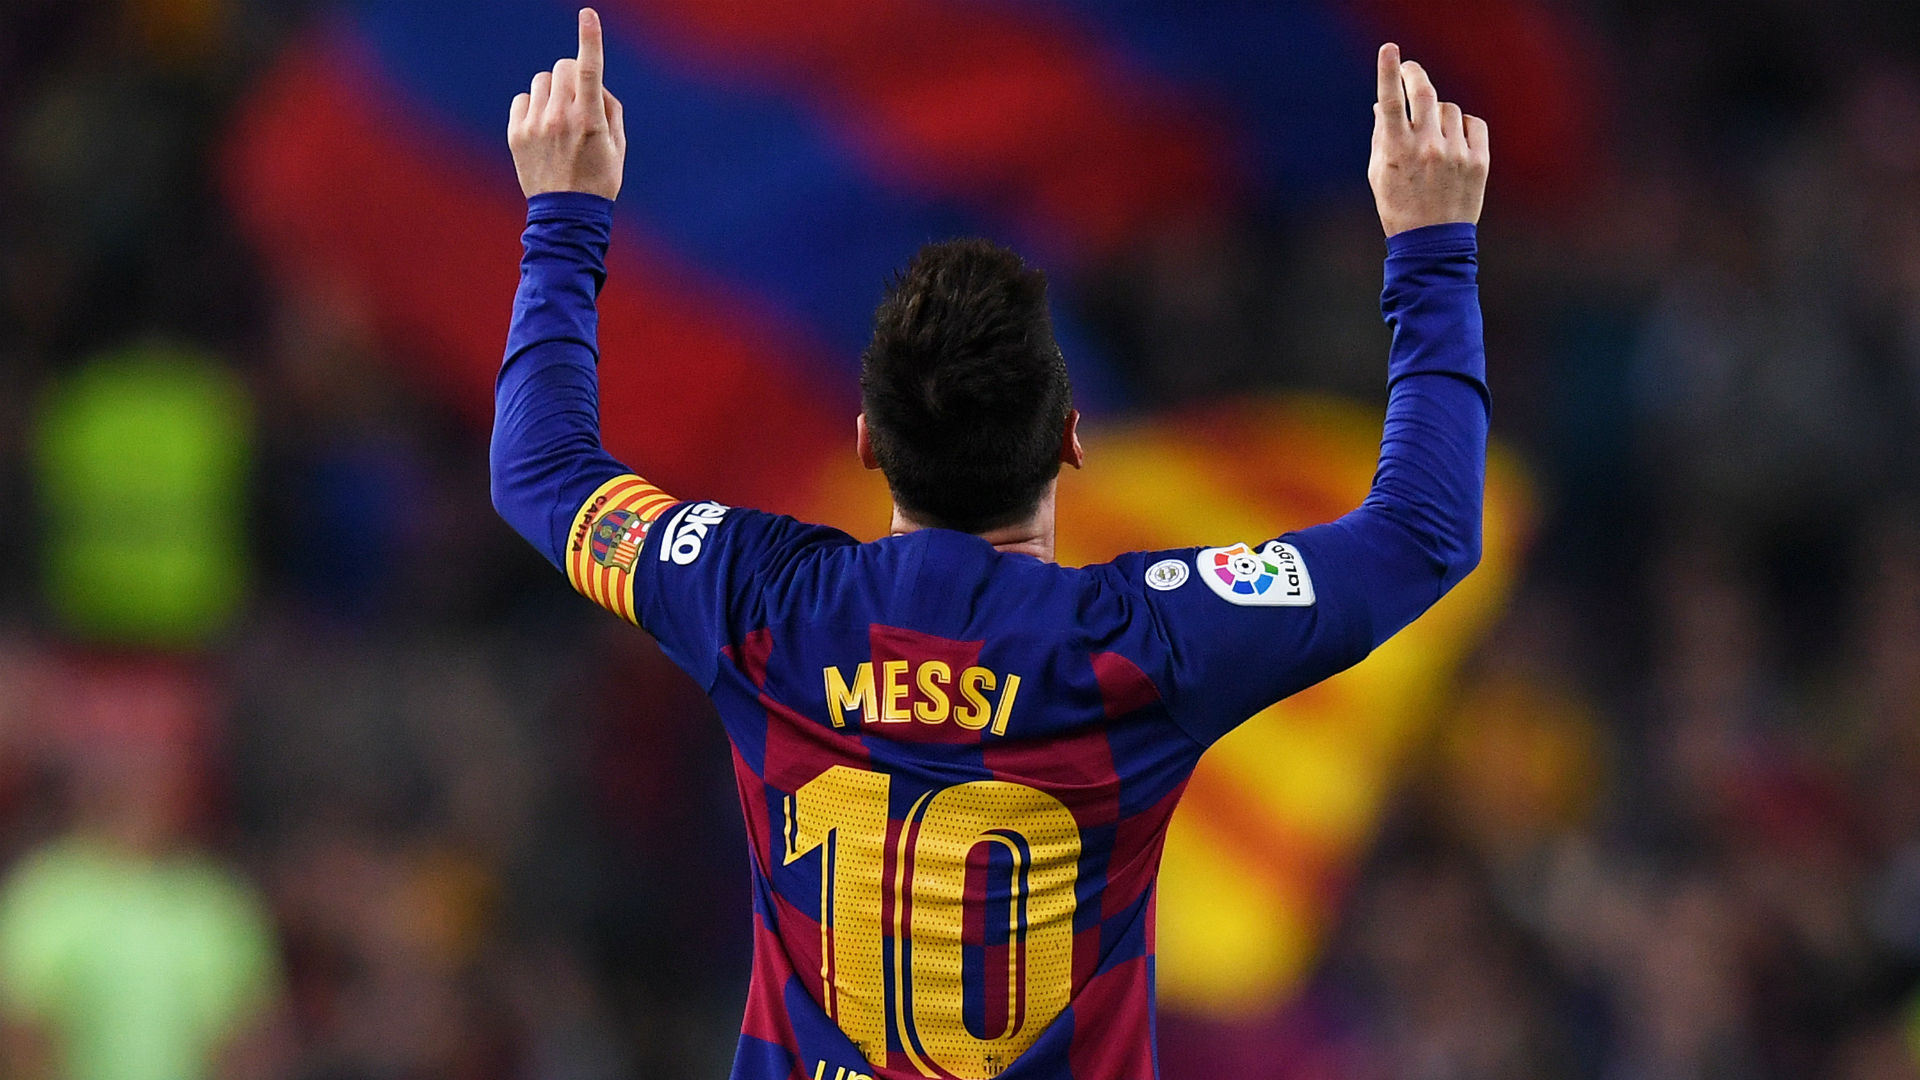 Football Manager 2020 désigne Lionel Messi, meilleur joueur au monde